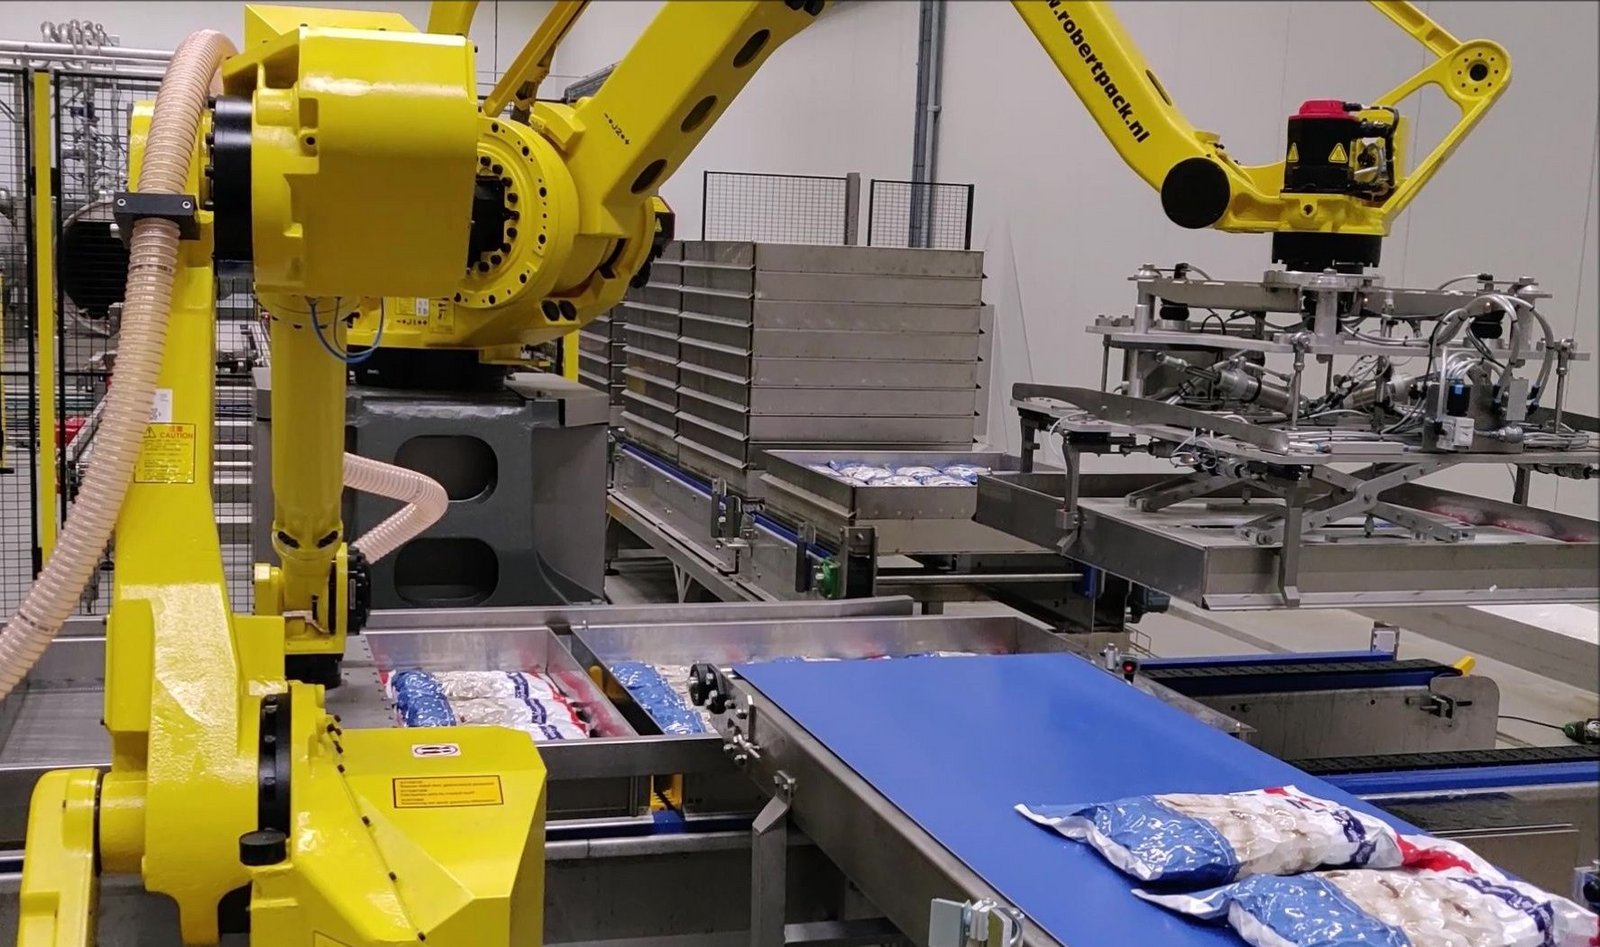 fanuc-handling-robot-voor-de-champignonindustrie-geleverd-door-robertpack-uit-zwolle